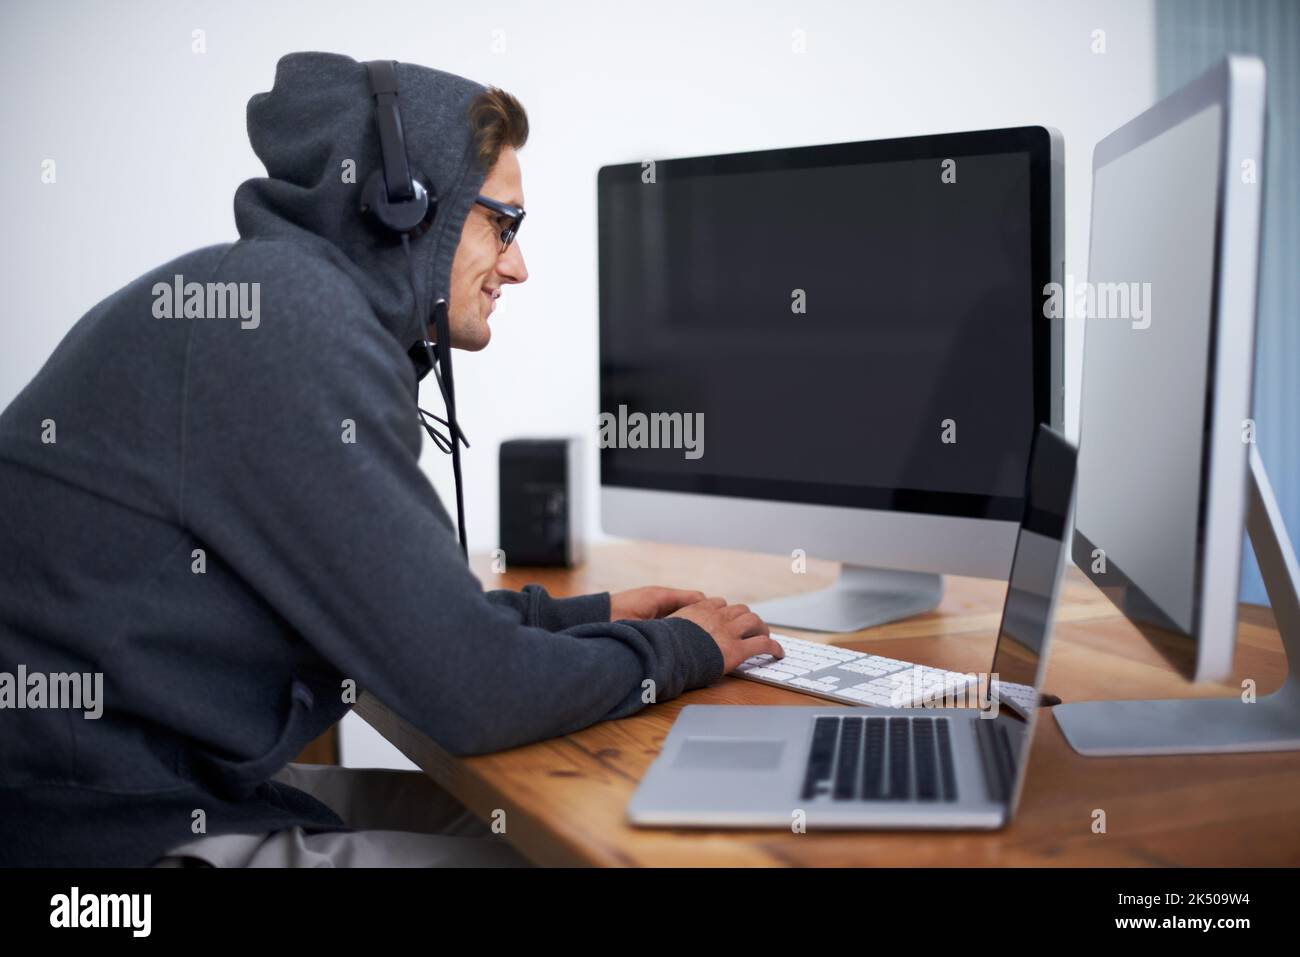 Nichts anderes als seine Arbeit ist in seinem Kopf. Ein junger Hacker, der auf zwei Bildschirmen und einem Laptop mit Hoodie arbeitet. Stockfoto